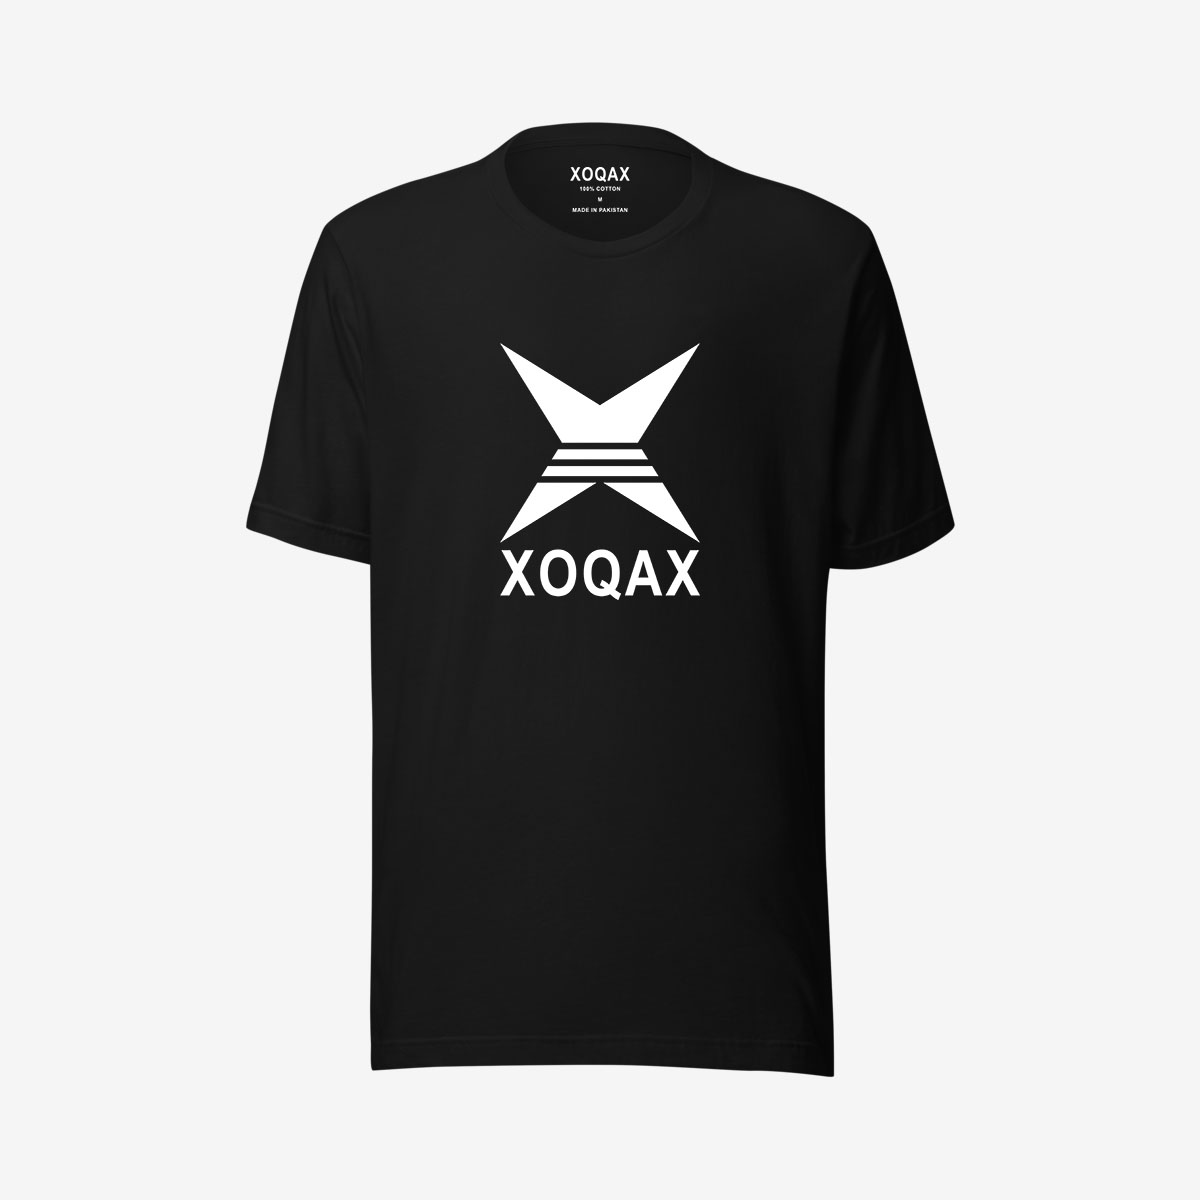 xoqax-graphic-t-shirts-black